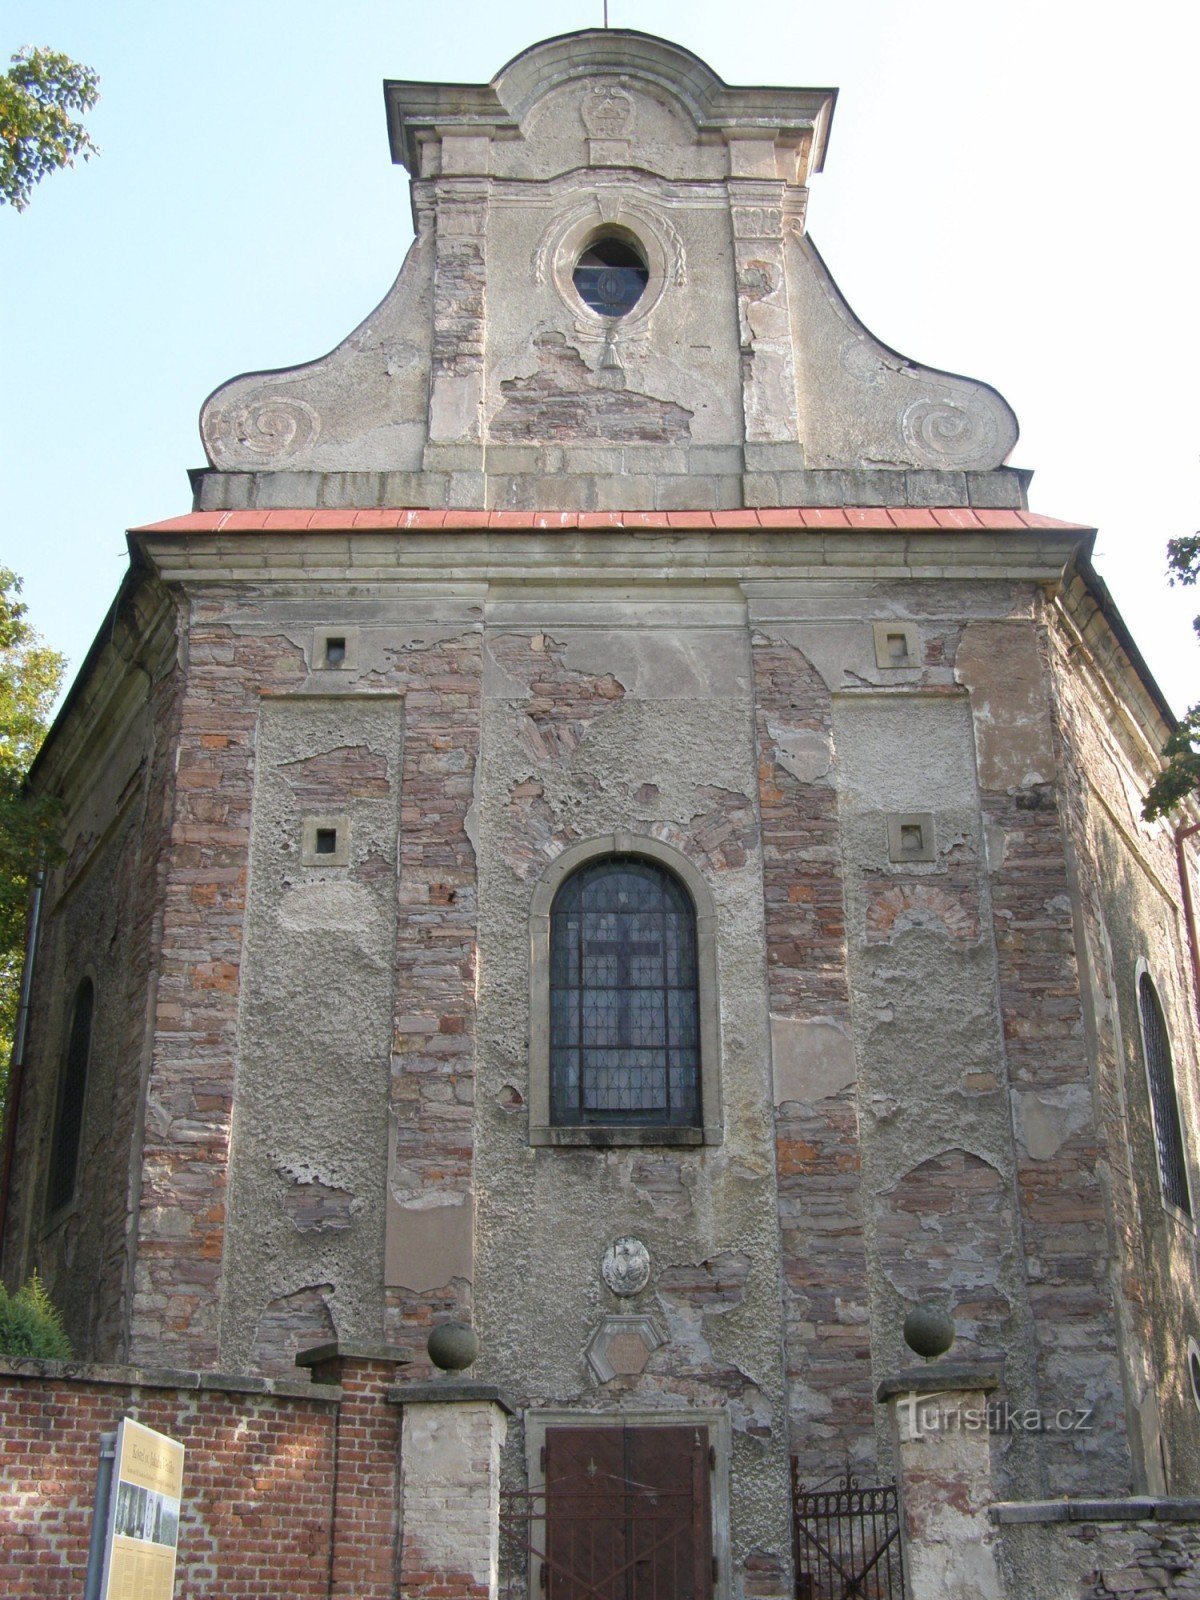 Ruprechtice - église St. Jacob le Majeur